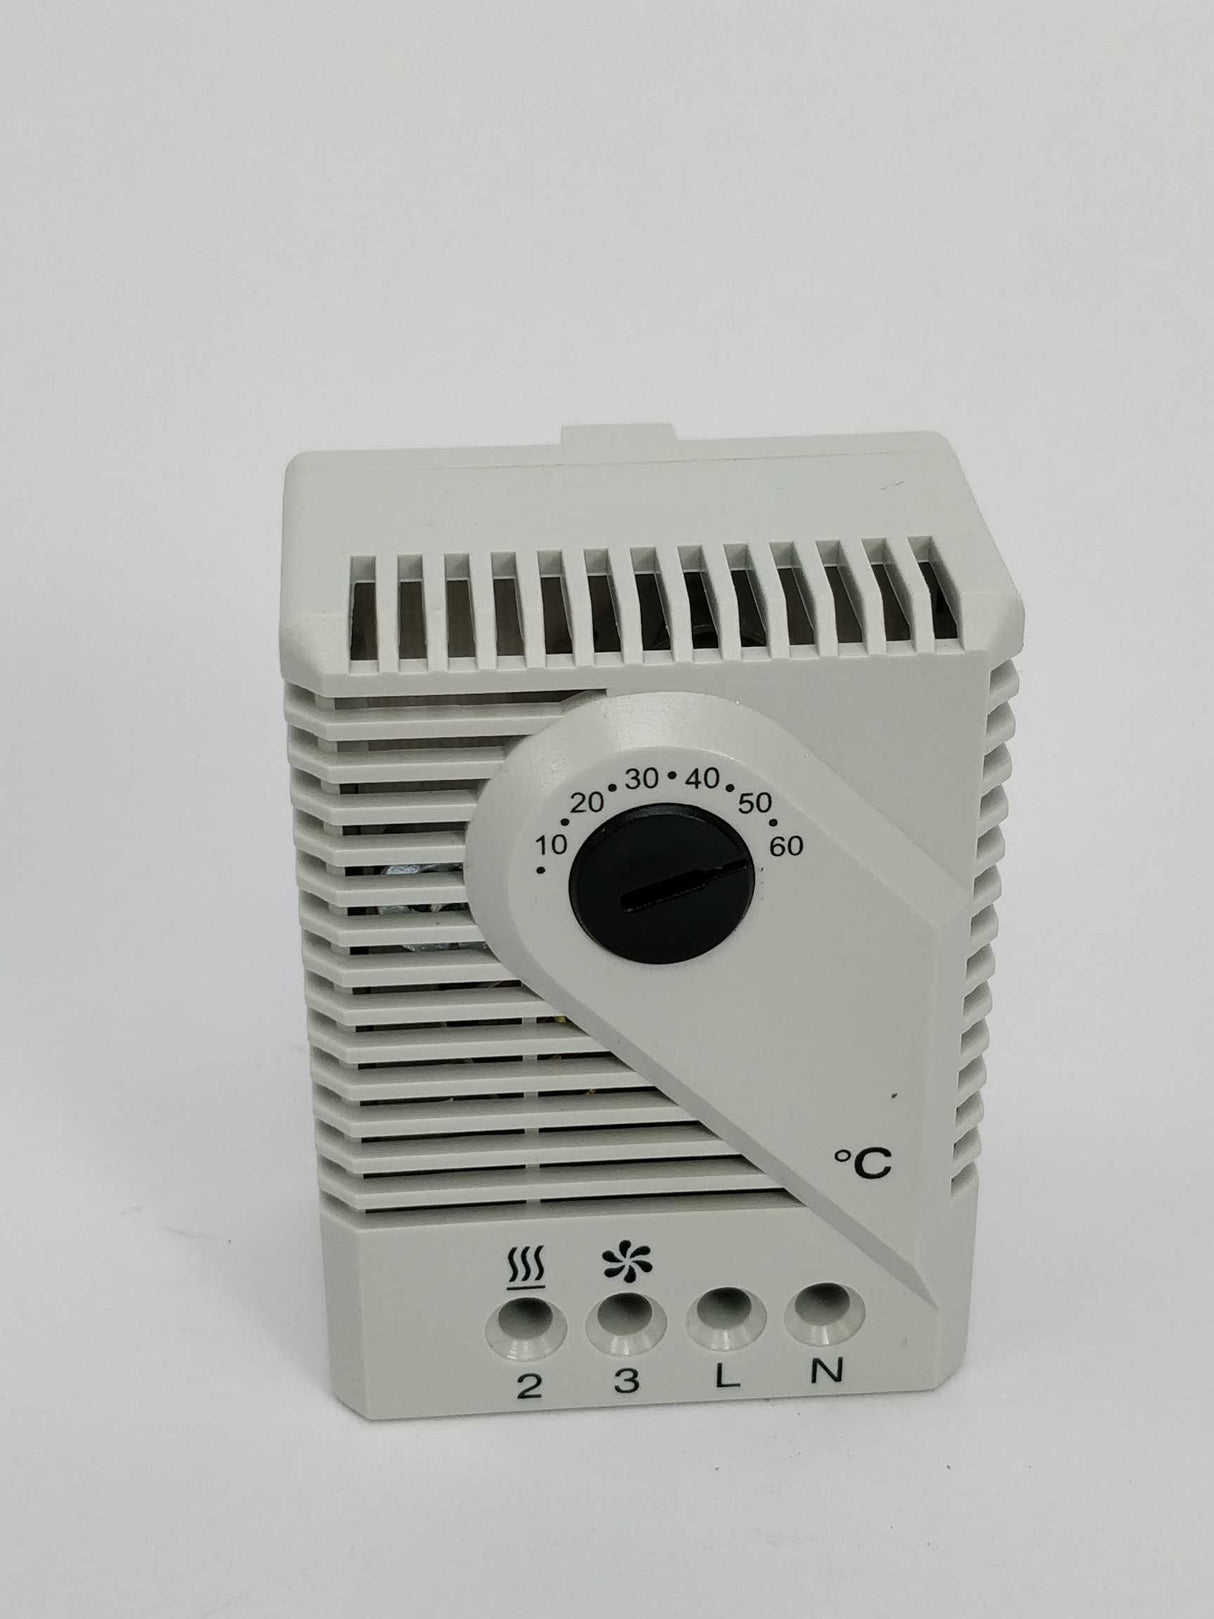 ETA WI280 Thermostat